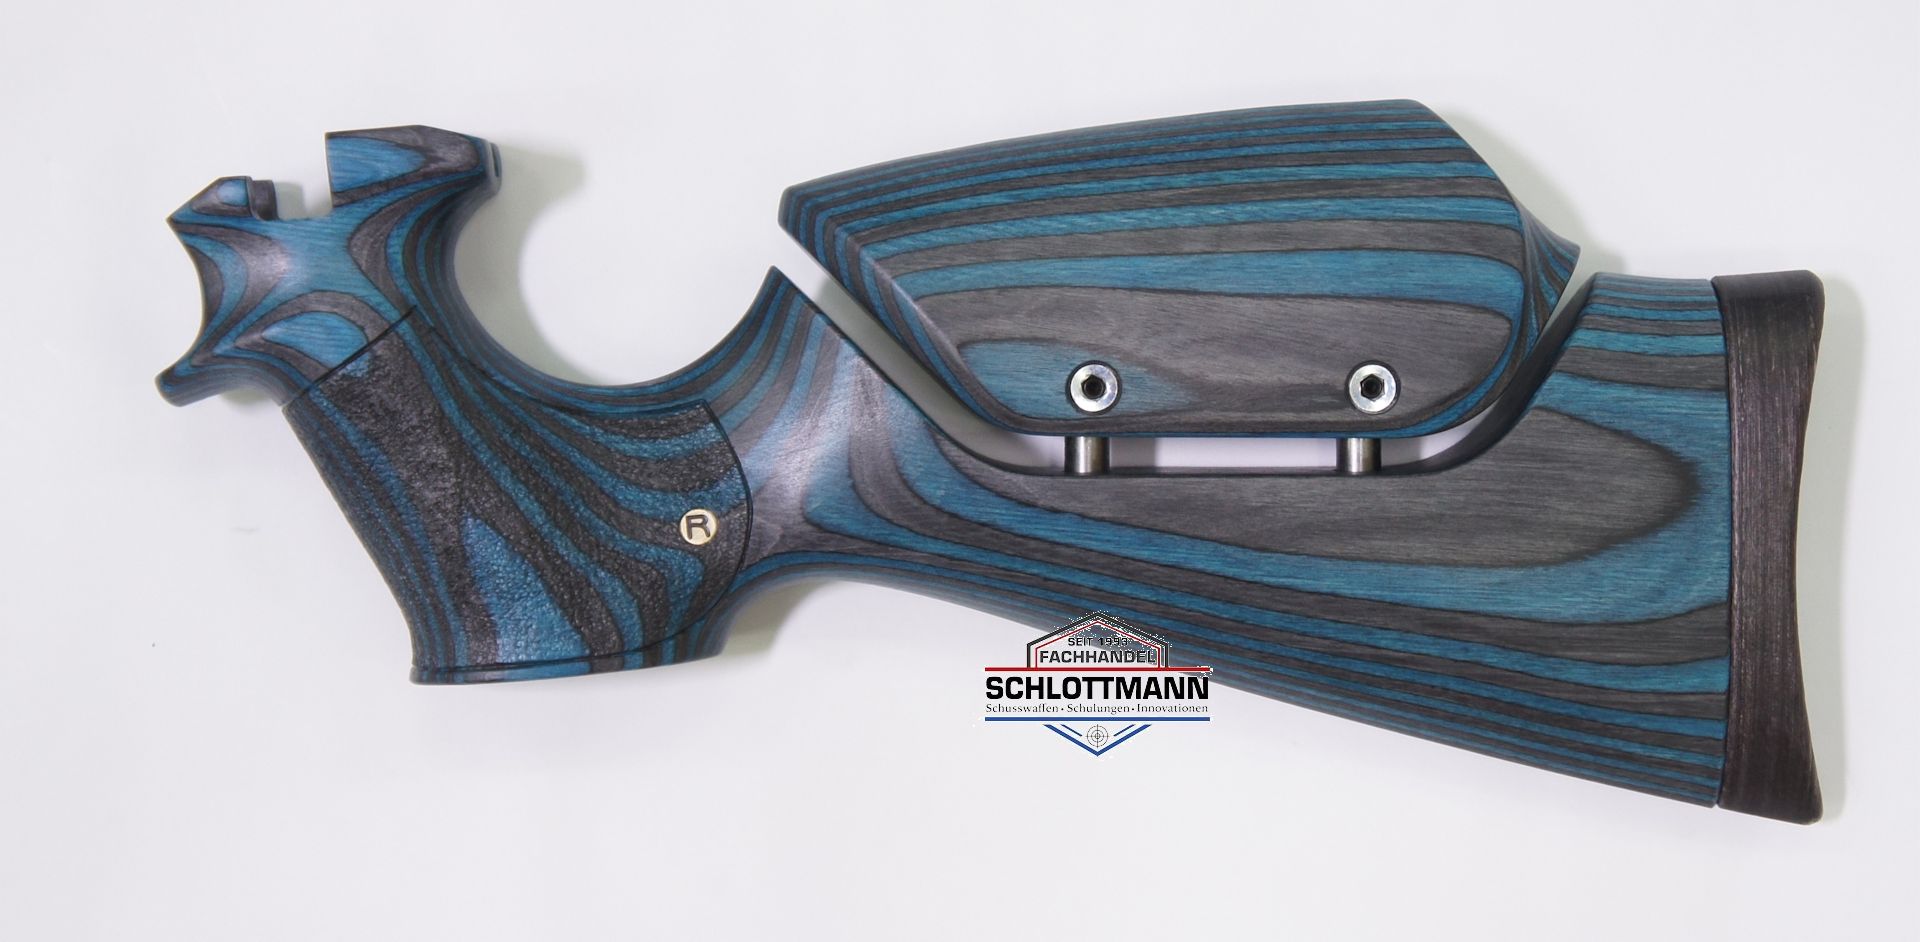 Anschlagschaft für Luftpistole airmaX PP700S-A aus schwarz-blauem Schichtholz mit verstellbarer Schaftbacke